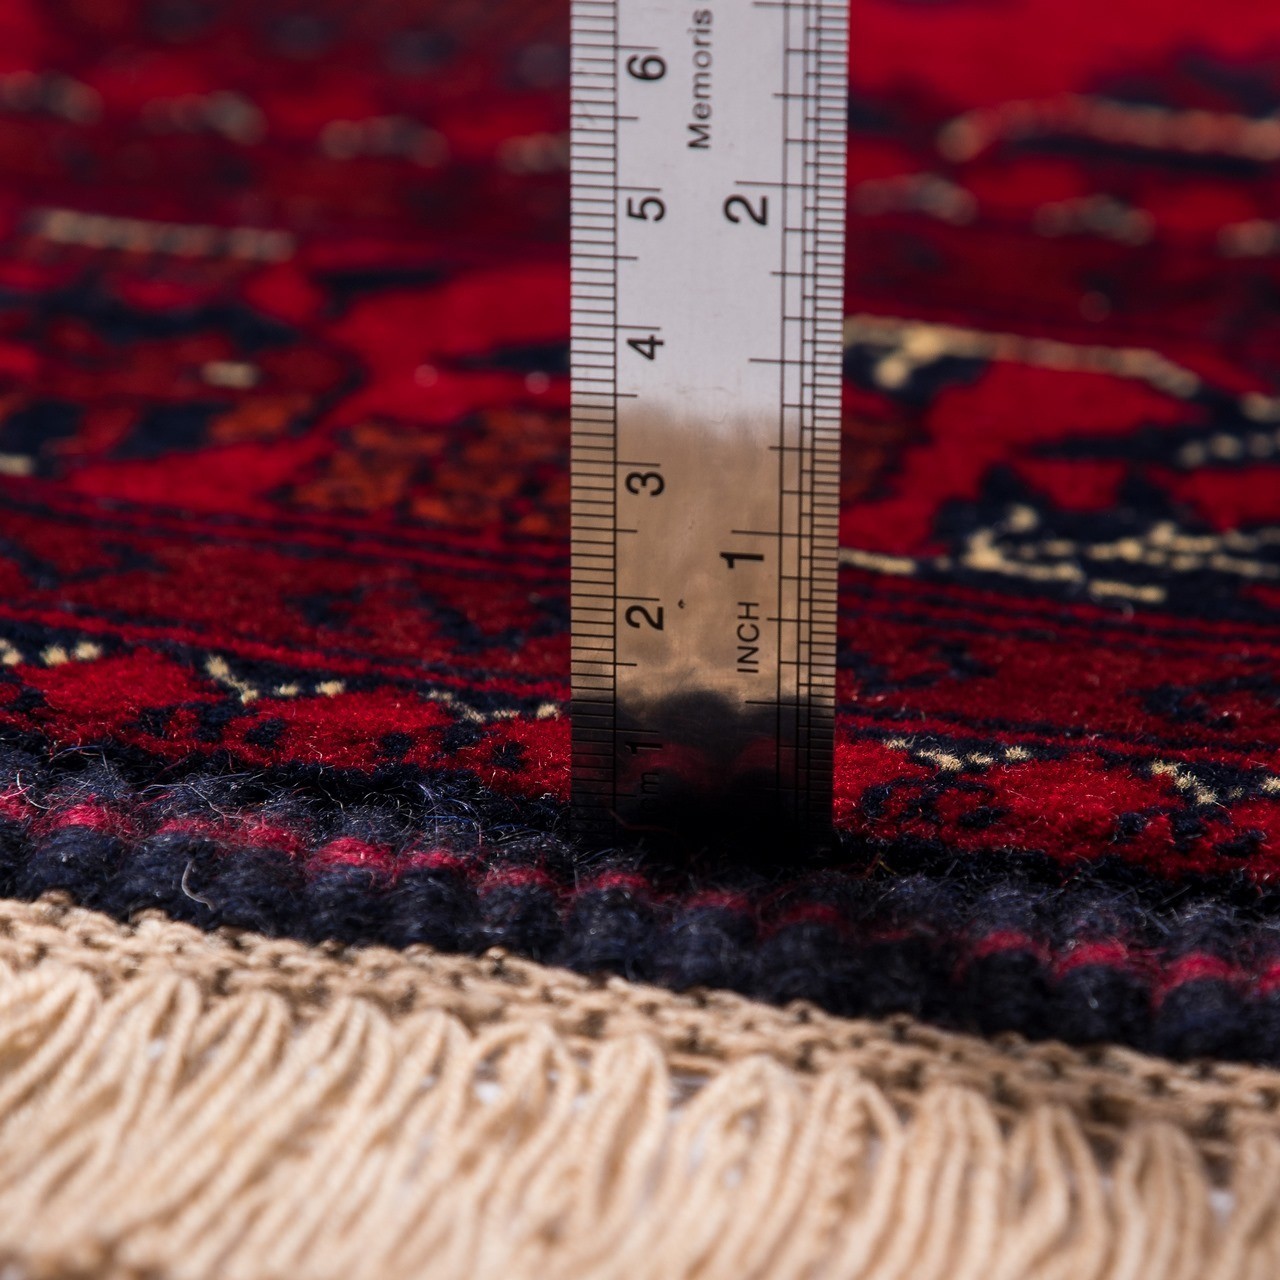 伊朗手工地毯编号 167035